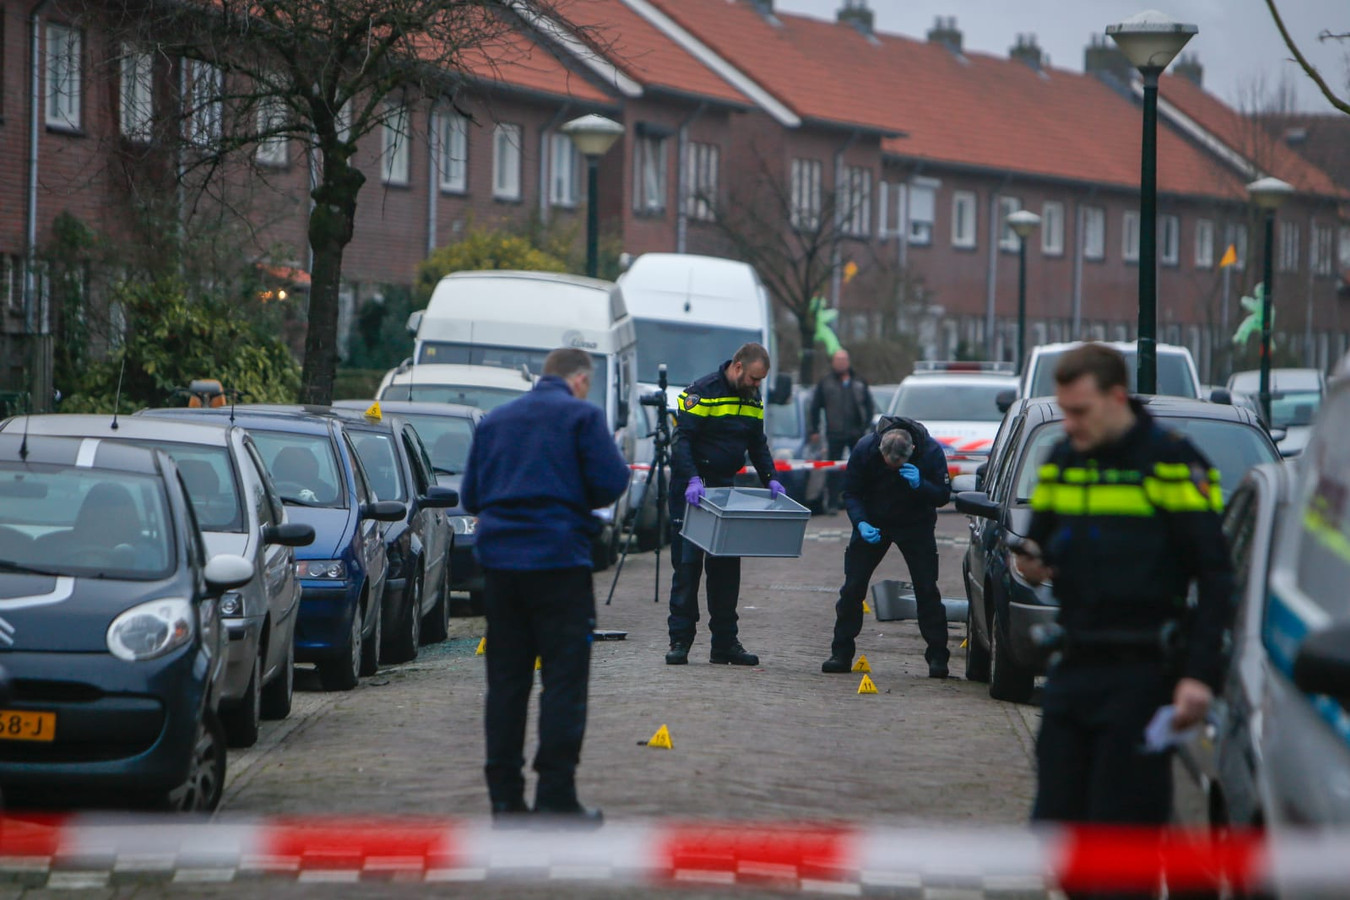 haar magneet Ochtend gymnastiek Explosief ontploft onder auto in Tongelre in Eindhoven, ook andere auto  beschadigd | Foto | ed.nl